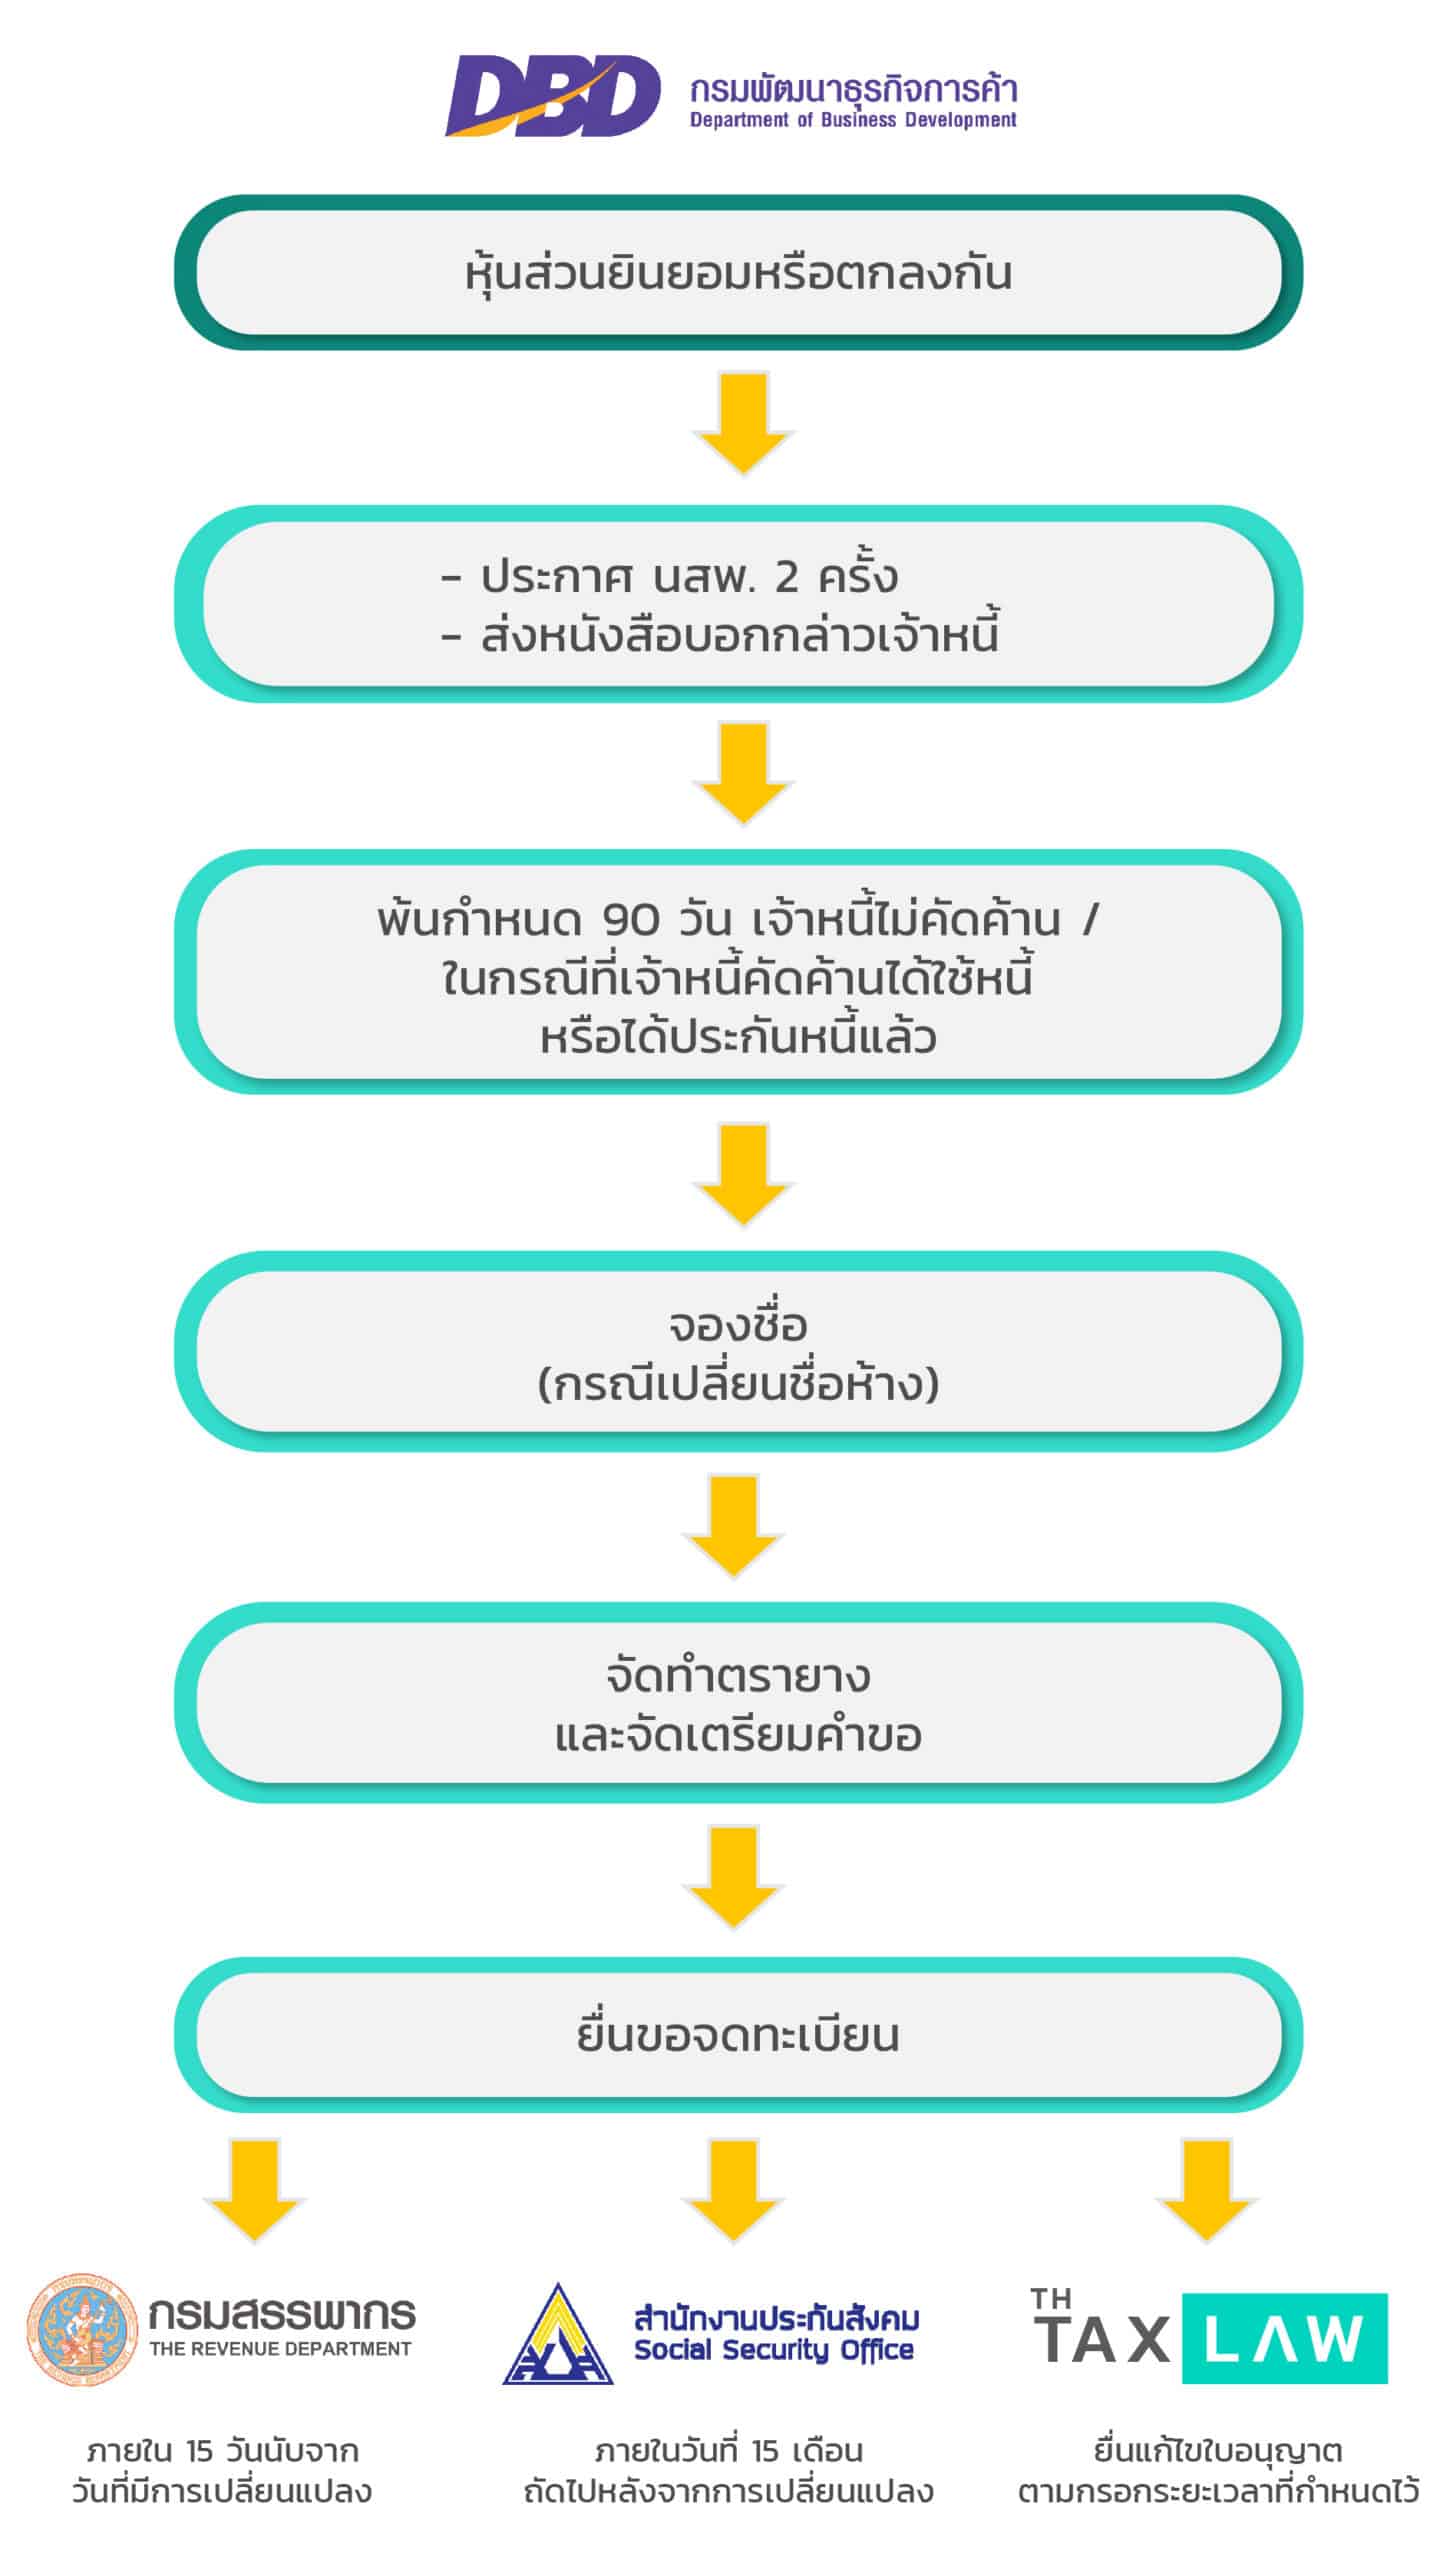 จดทะเบียน ควบห้างหุ้นส่วนจำกัด ควบกิจการ | Best Promotion สำหรับ 10  คนแรกของเดือน | Thai Tax Law